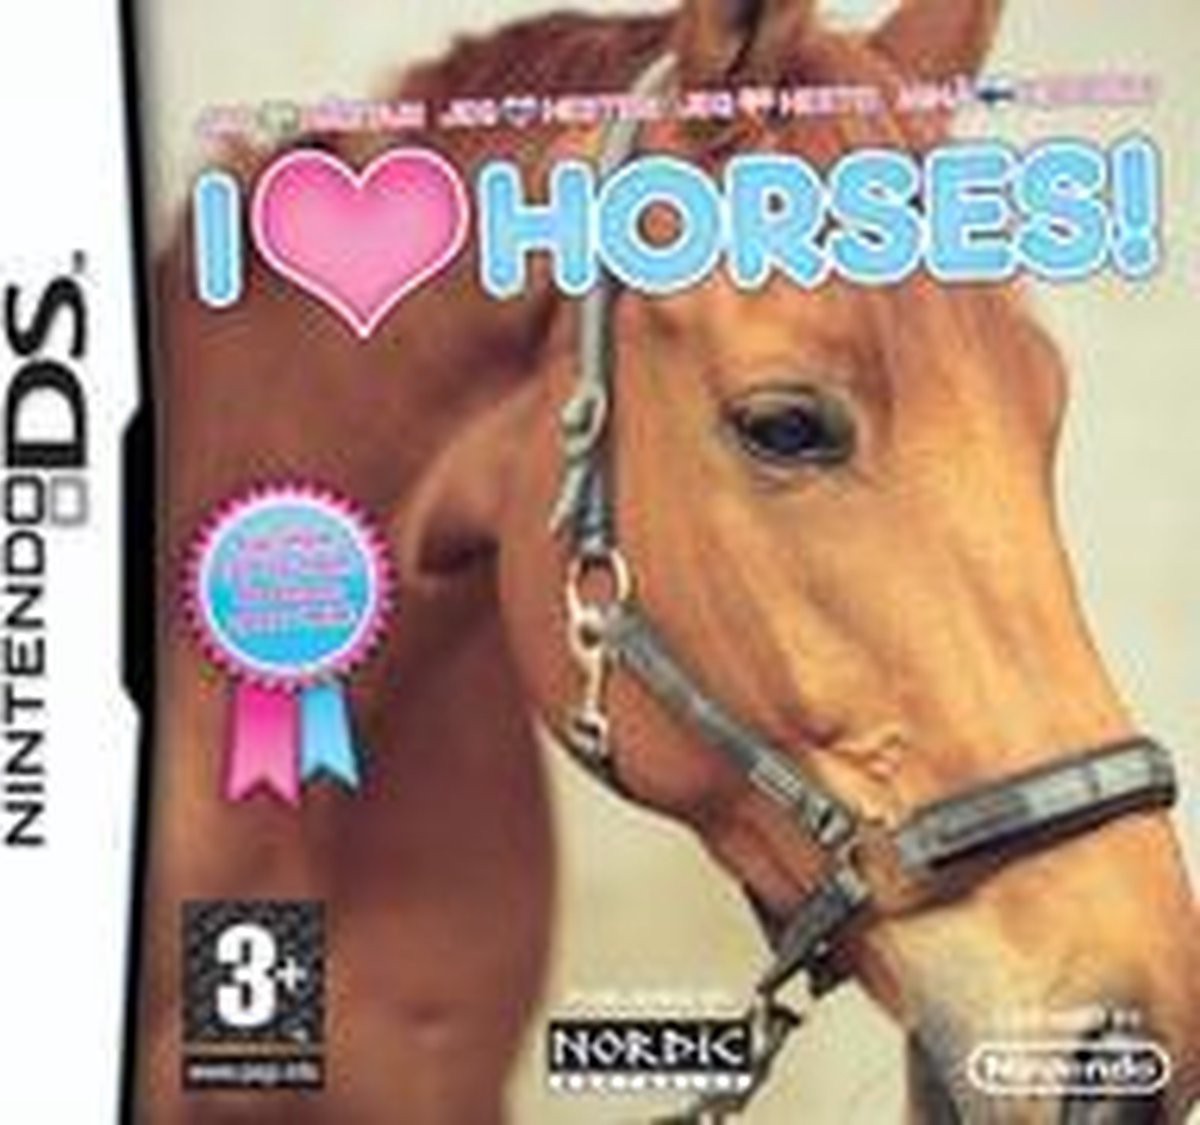 I Love Horses - Nintendo DS Games